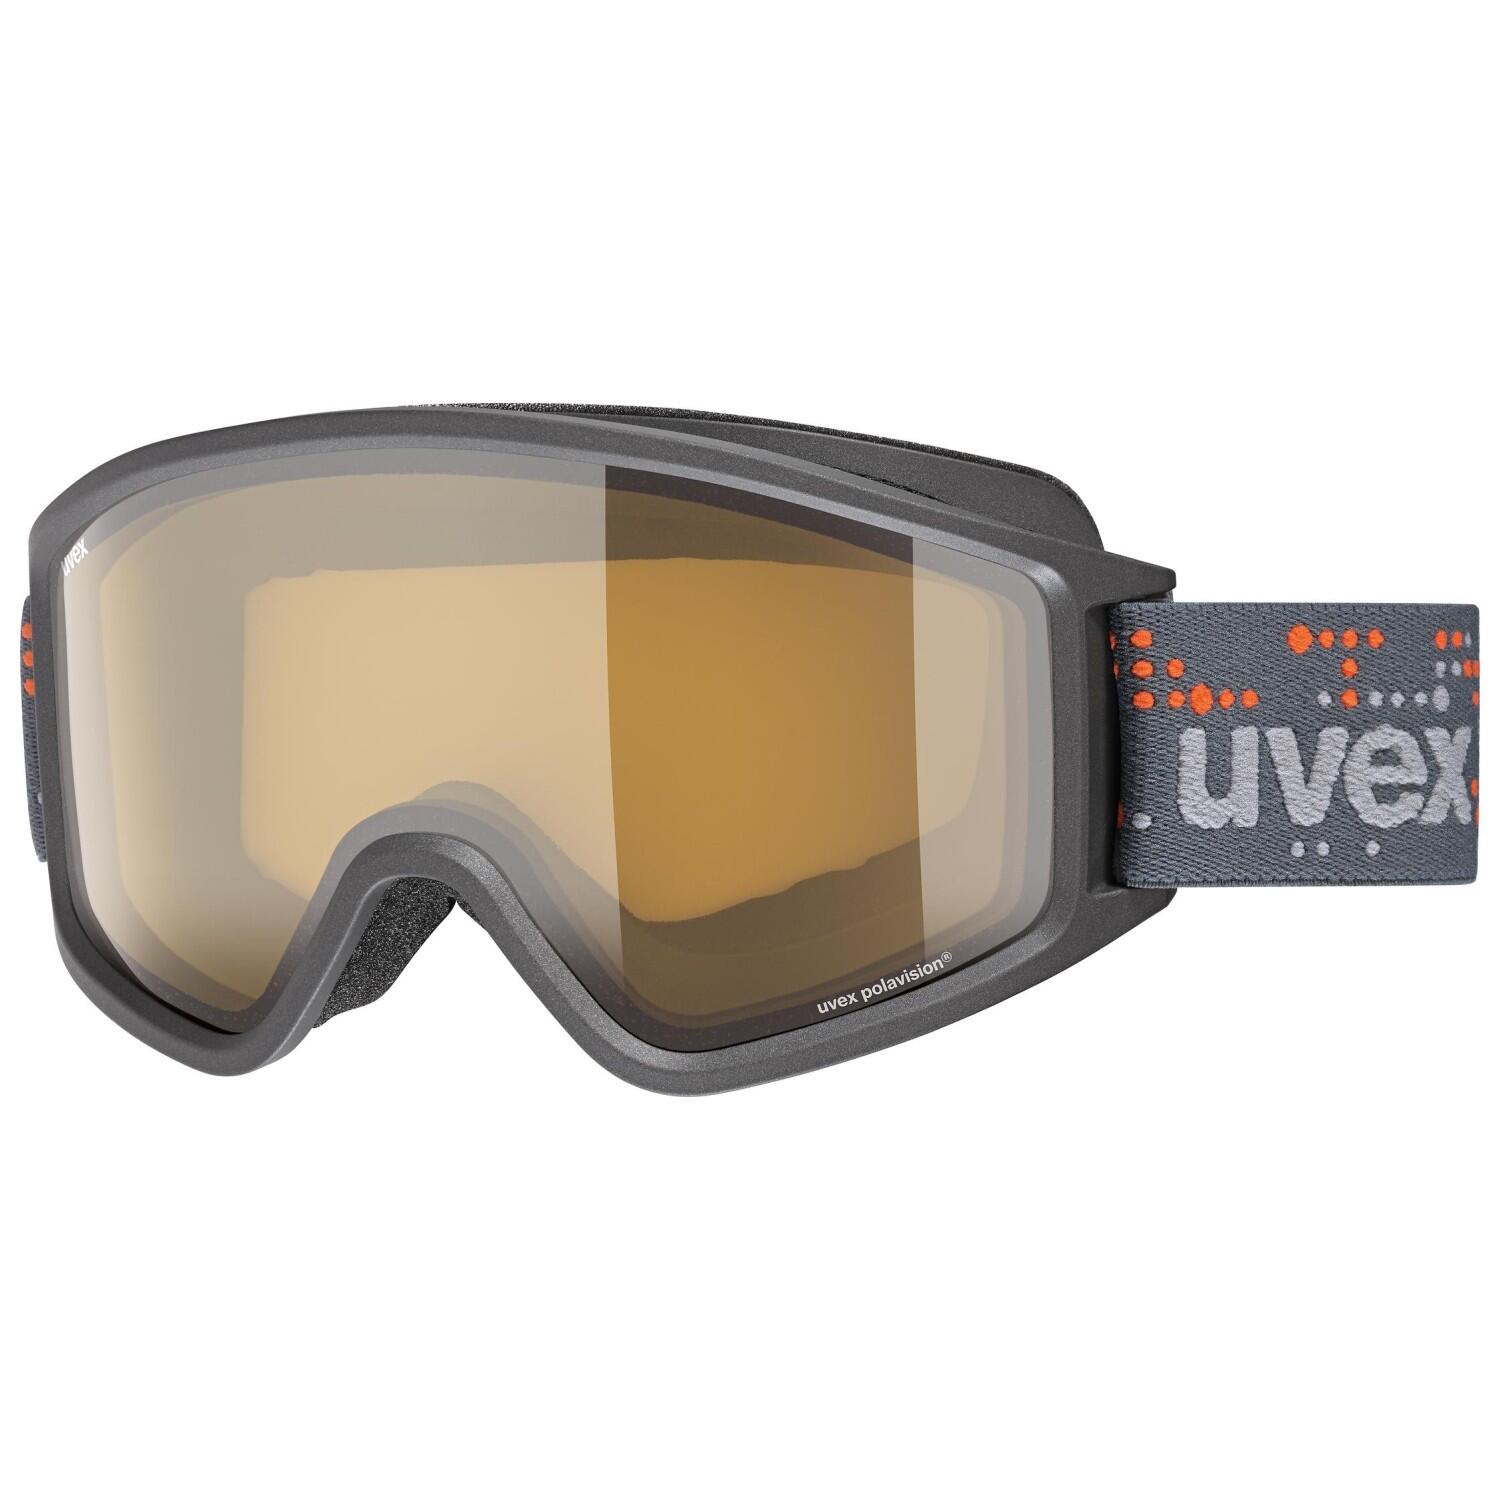 Uvex Unisex-Erwachsene g.gl 3000 P Skibrille, Anthracite/Clear-Clear, Einheitsgröße